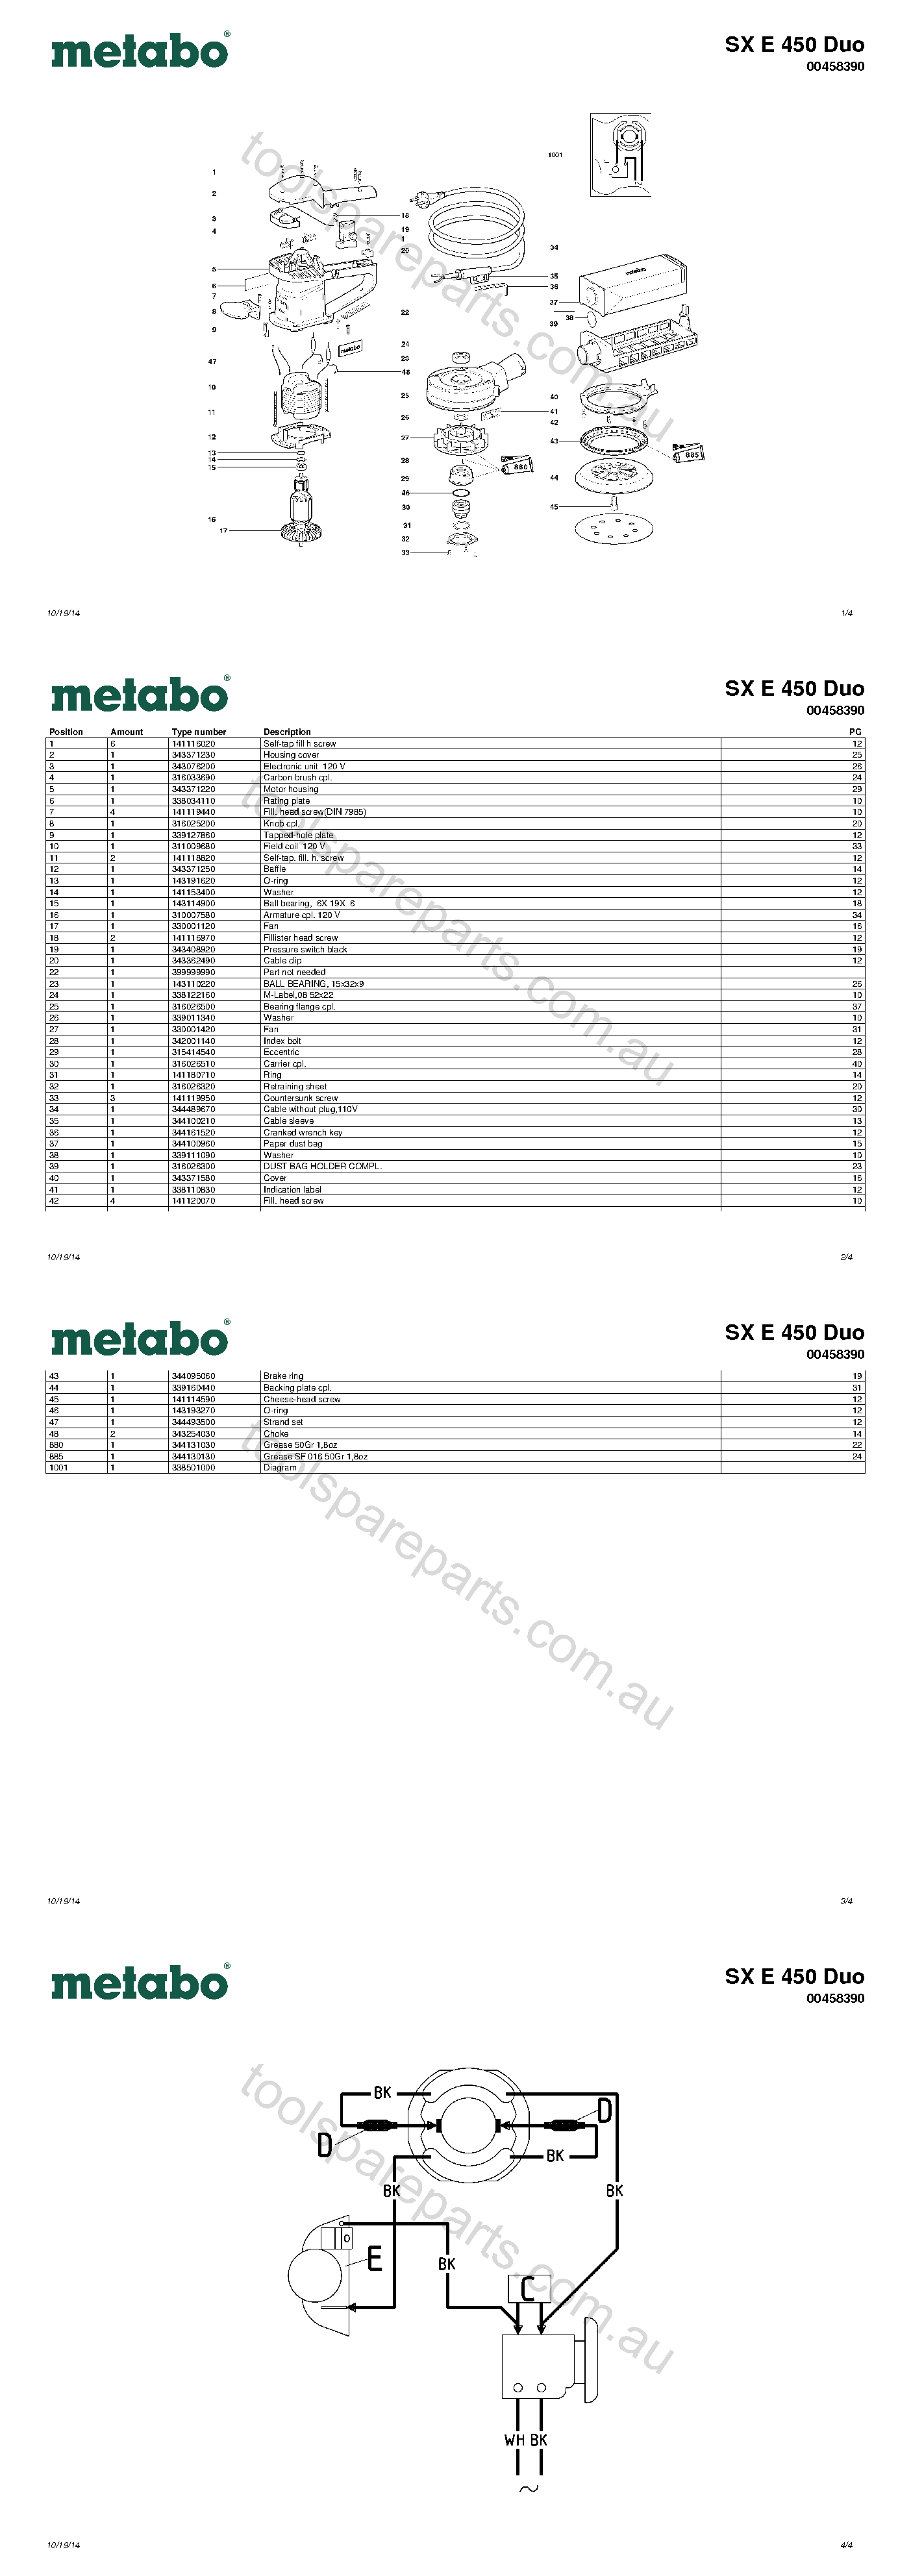 Metabo SX E 450 Duo 00458390  Diagram 1